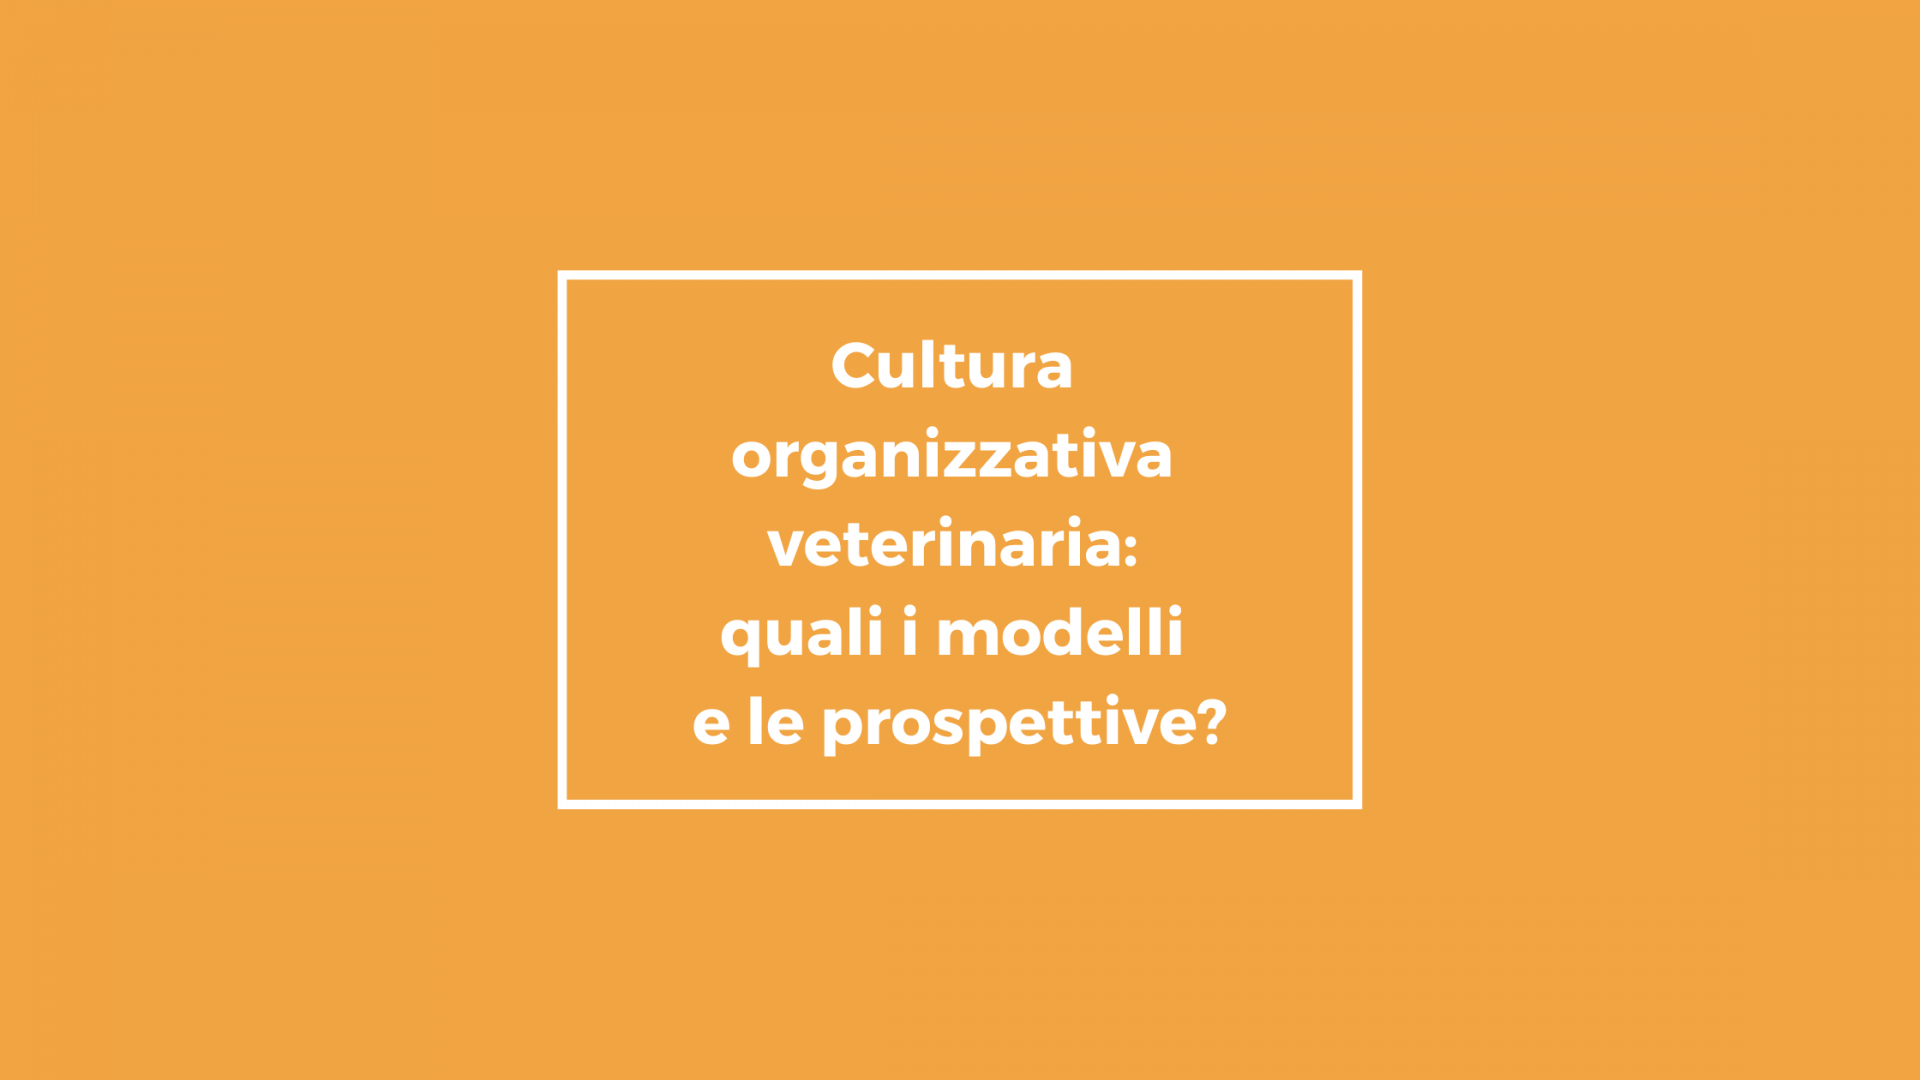 Cultura organizzativa veterinaria: quali i modelli e le prospettive?